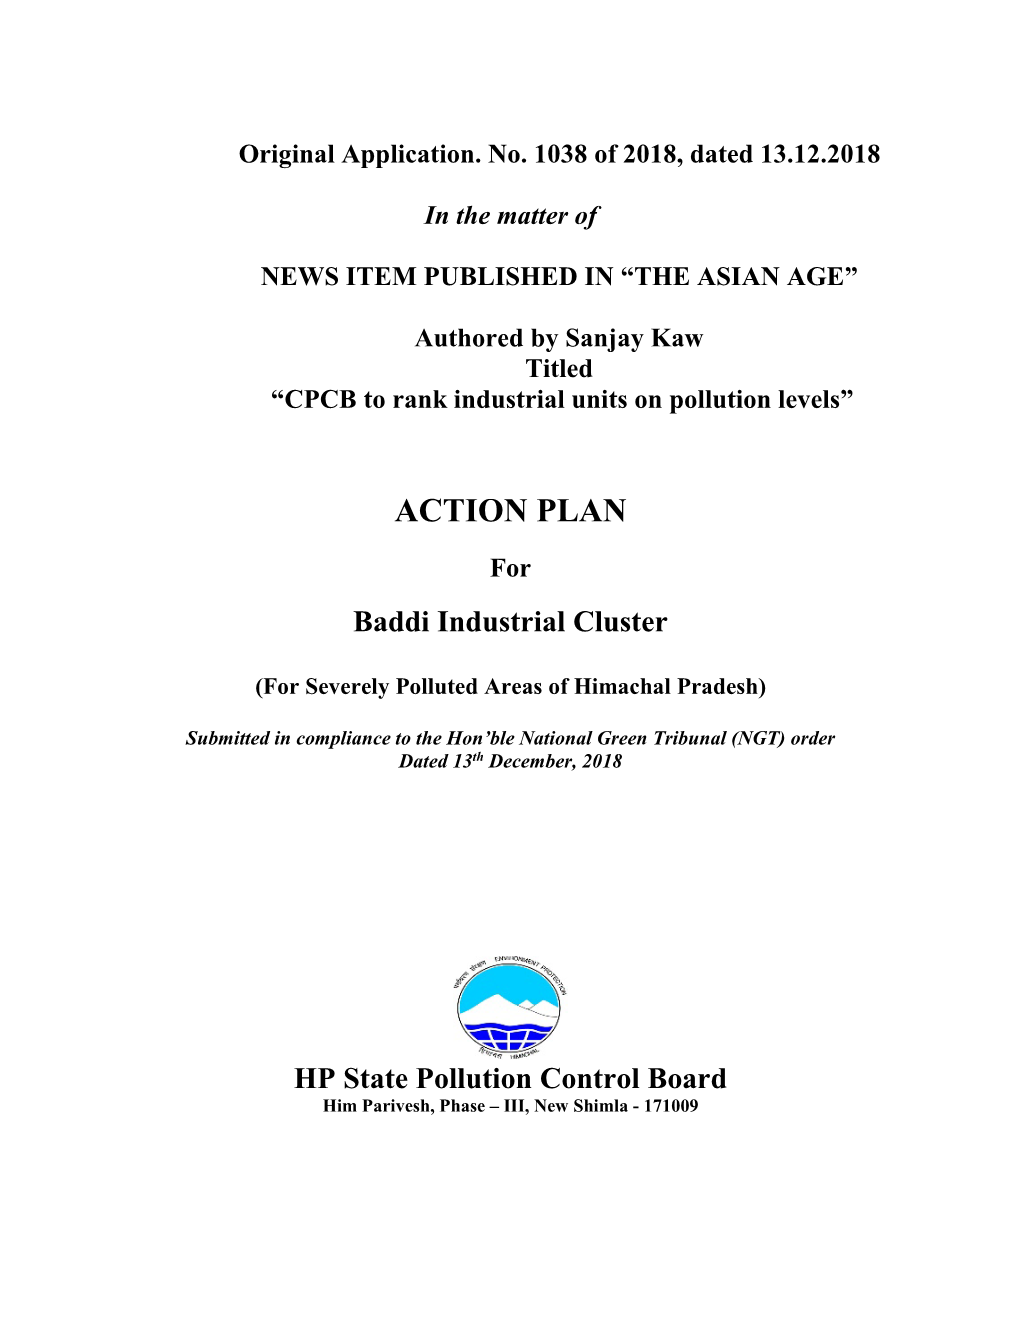 Action Plan of Baddi